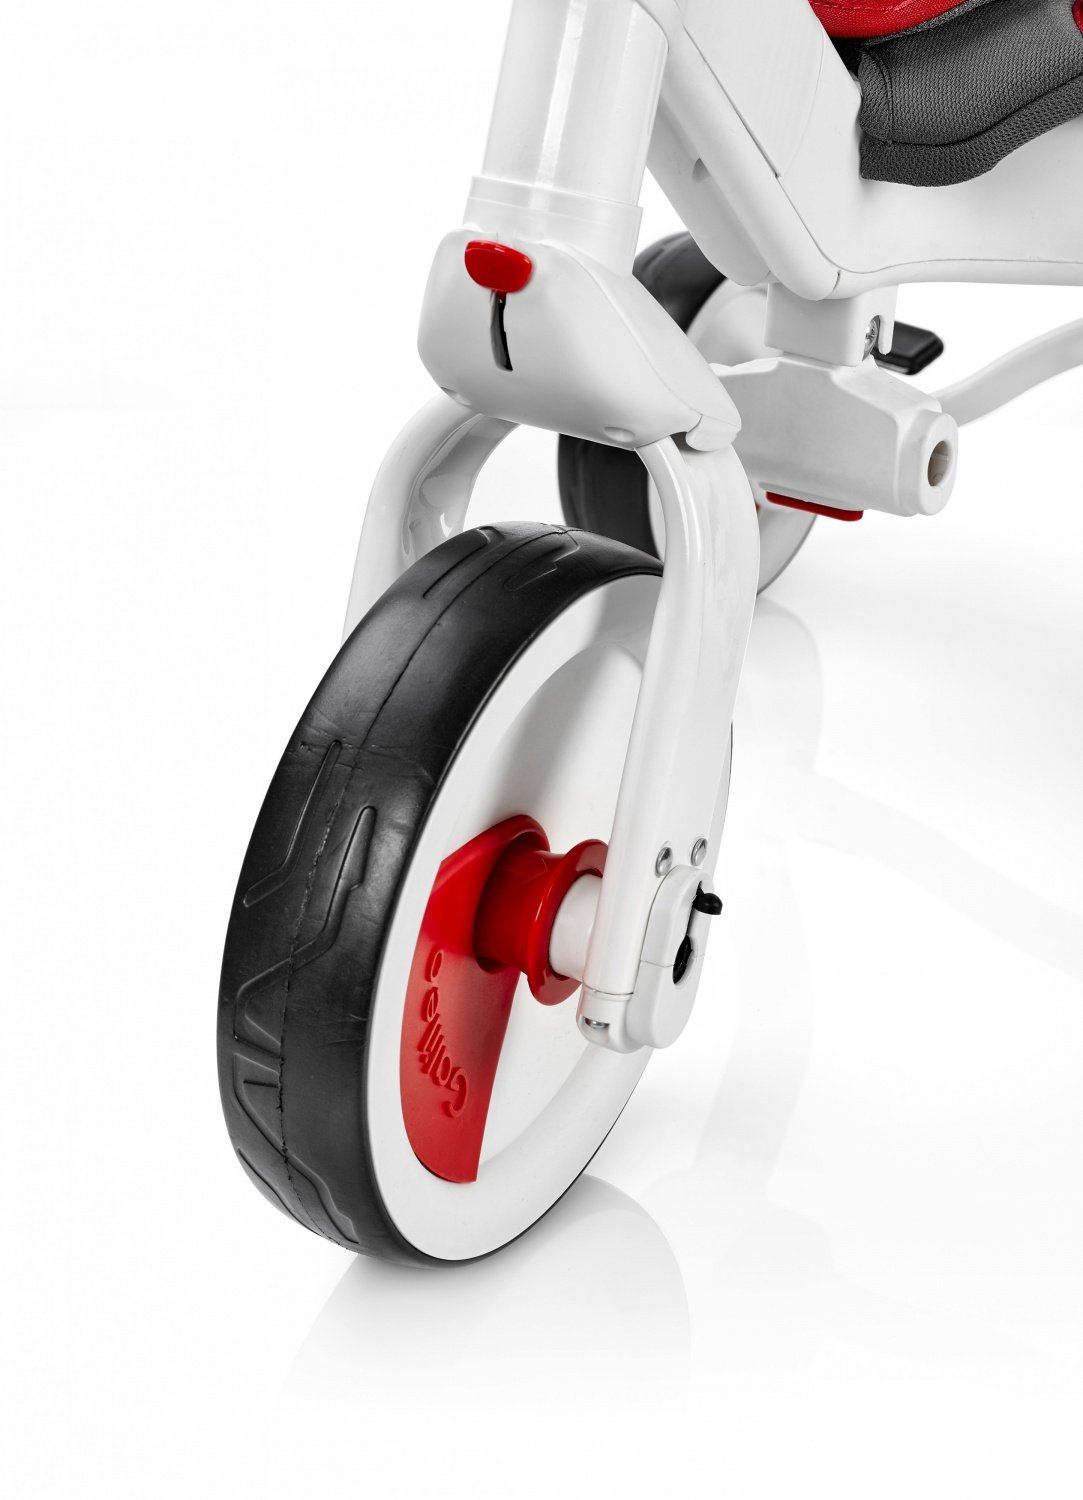 Трехколесный велосипед Galileo STROLLCYCLE красный (G-1001-R) фото 